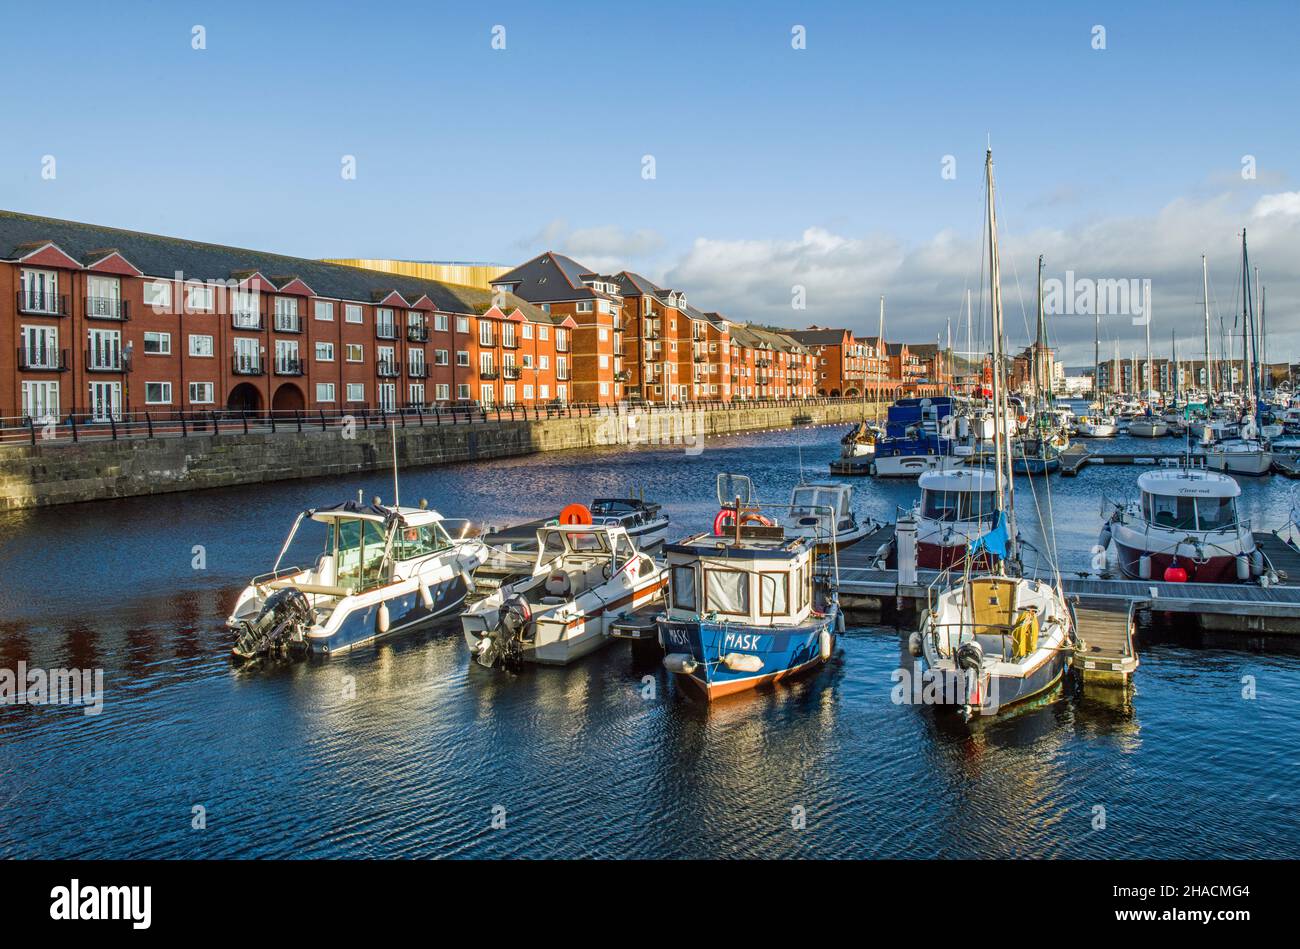 Das Innere der Jachthäfen in Swansea zeigt verankerte Boote und Apartments Stockfoto